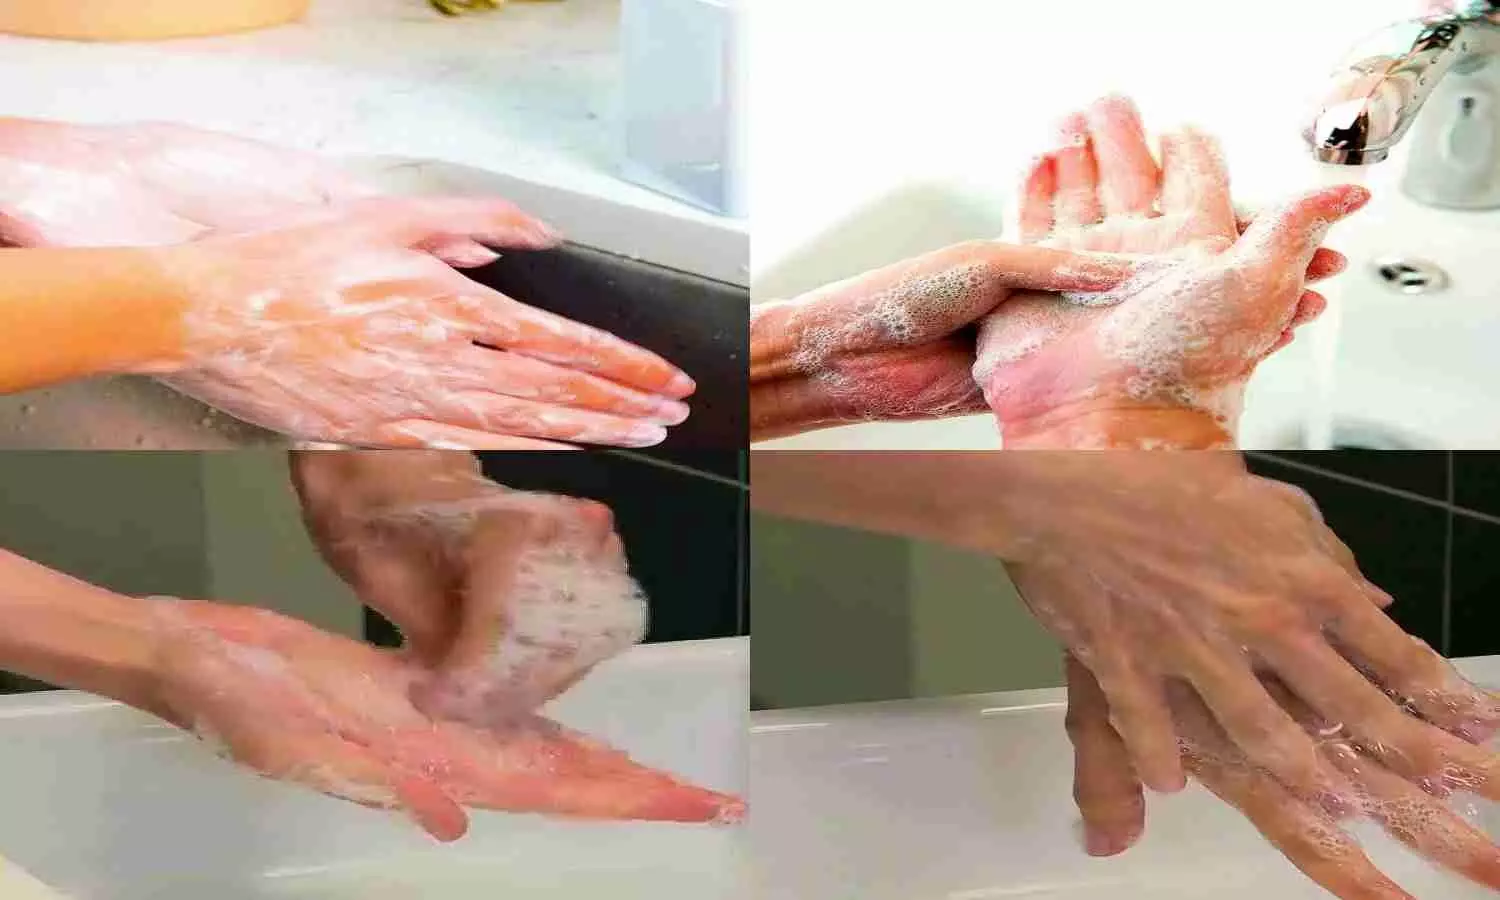 Tips for Hand Hygiene